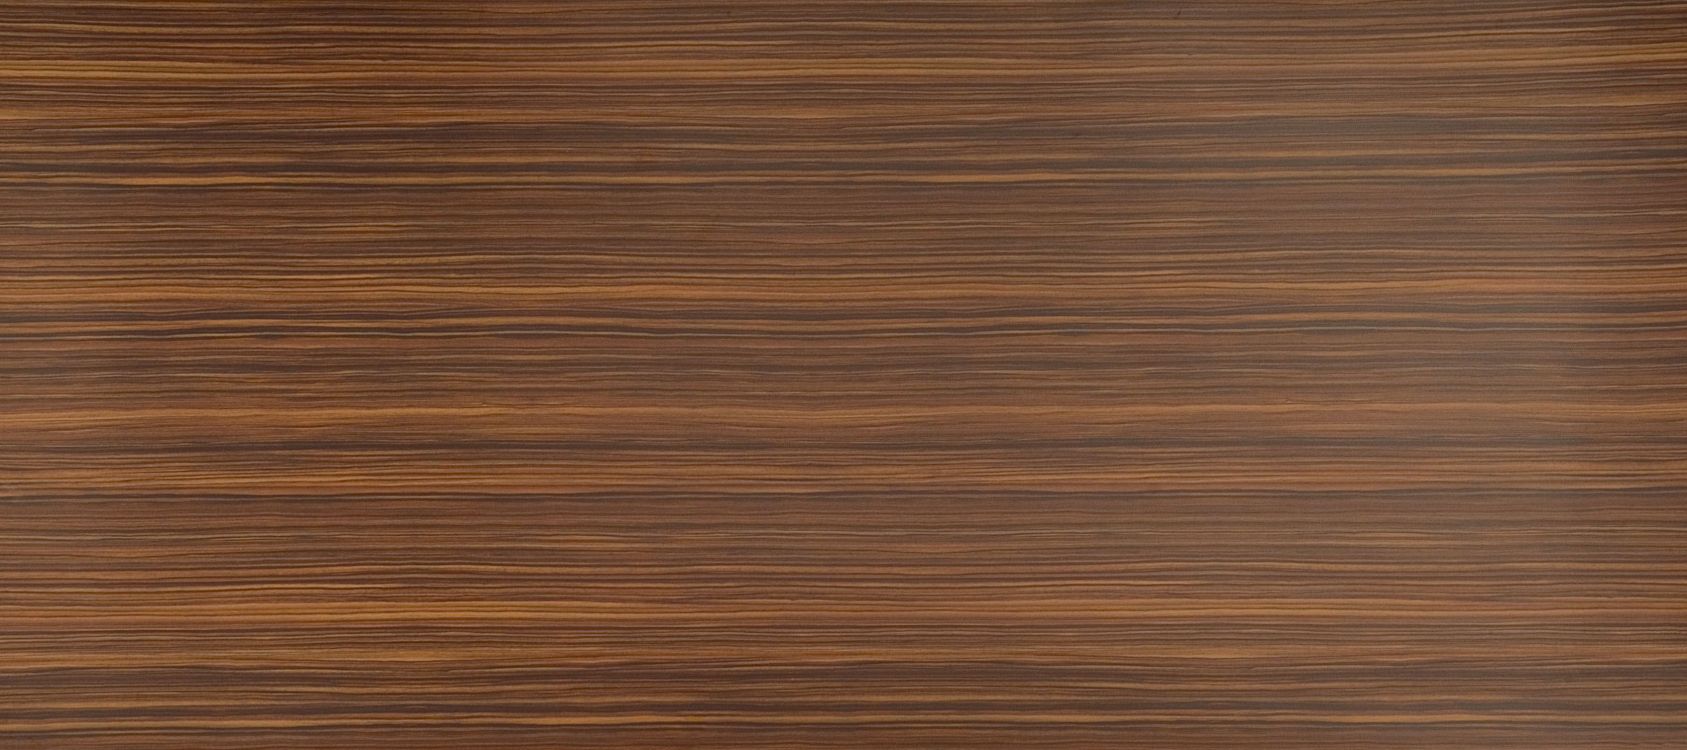 硬木, 木染色, 地板, 木, 胶合板 壁纸 3390x1507 允许